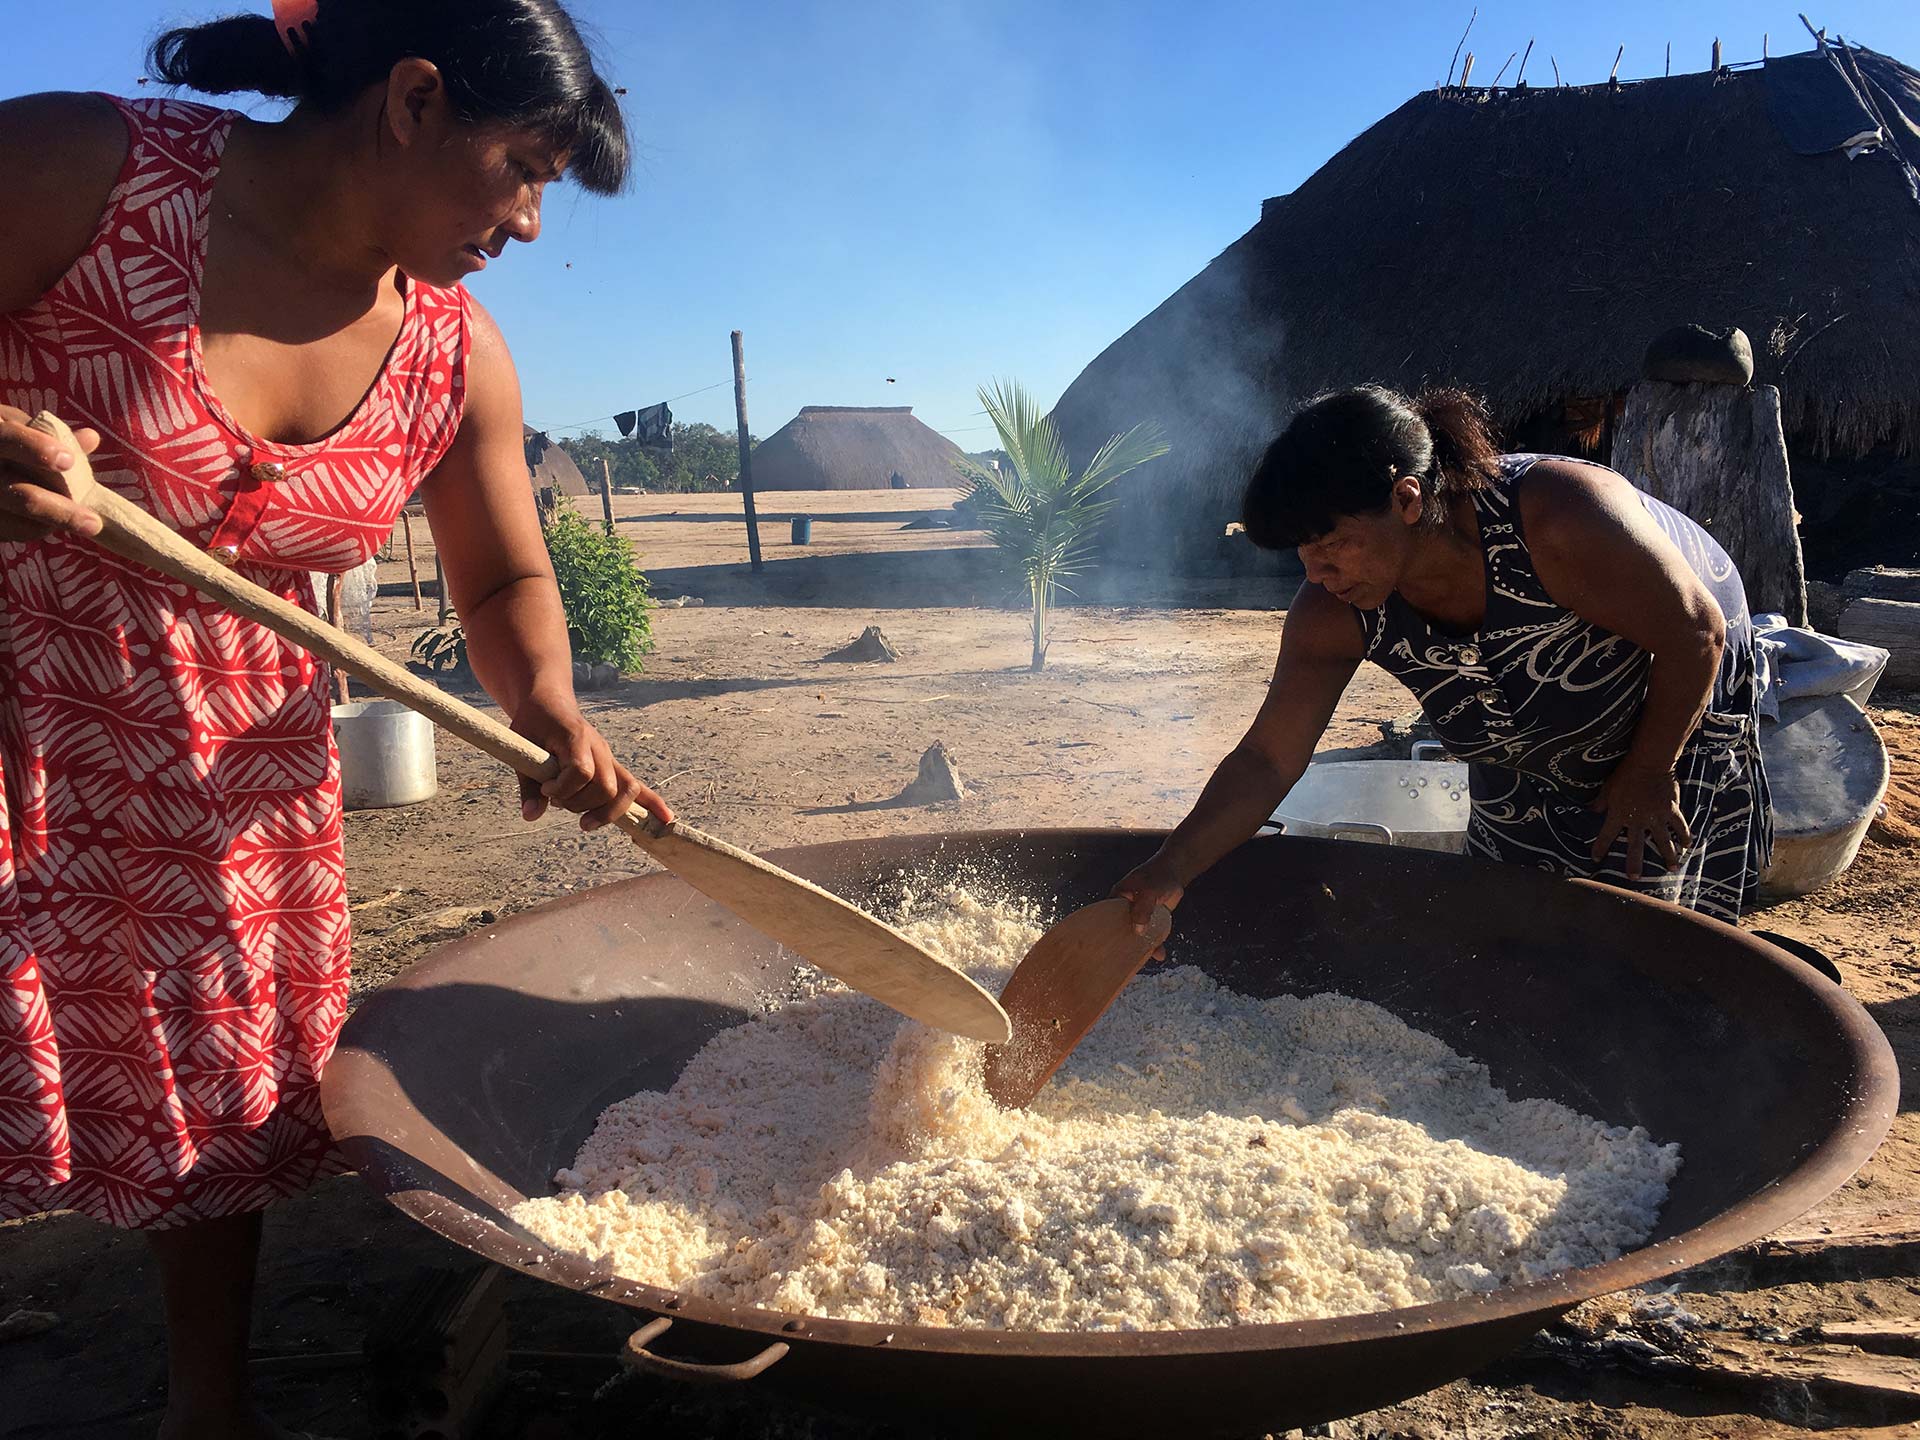 Brazilian women cooking